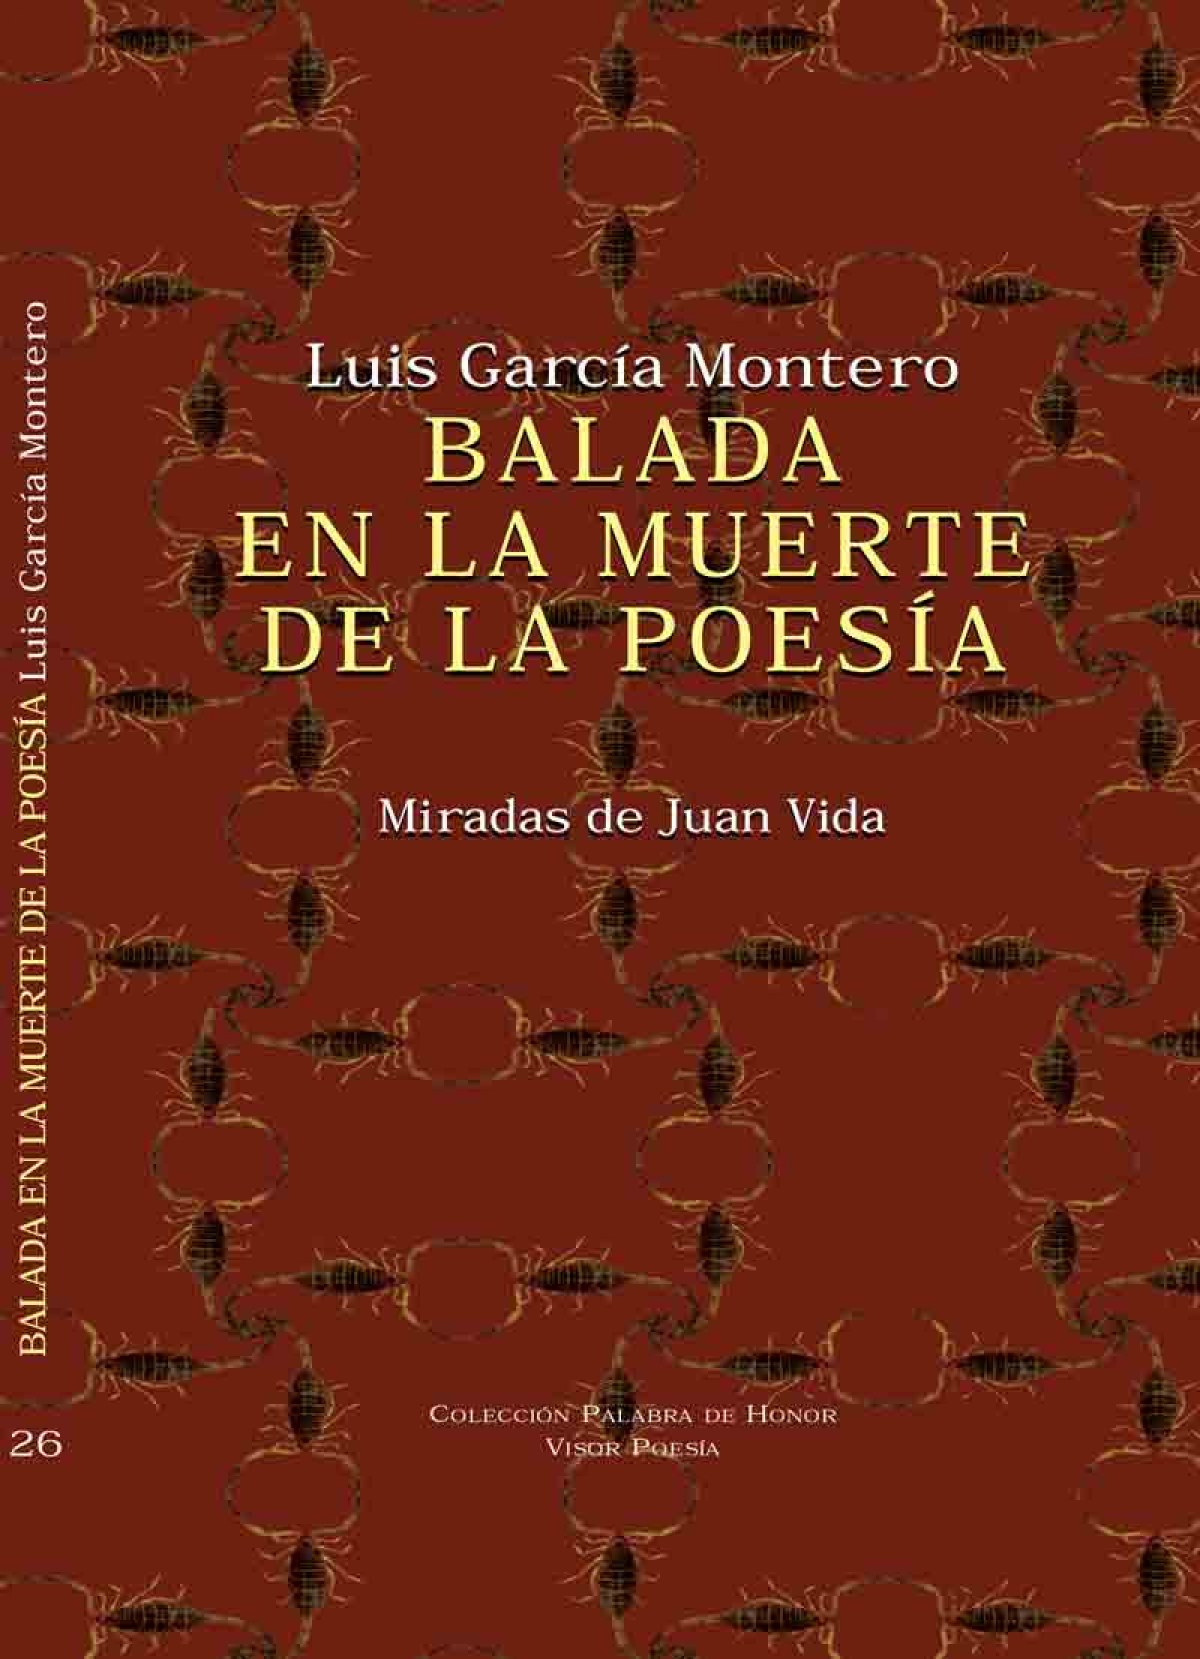 Balada en la muerte de la poesía MIRADAS DE JUAN VIDA - García Montero, Luis